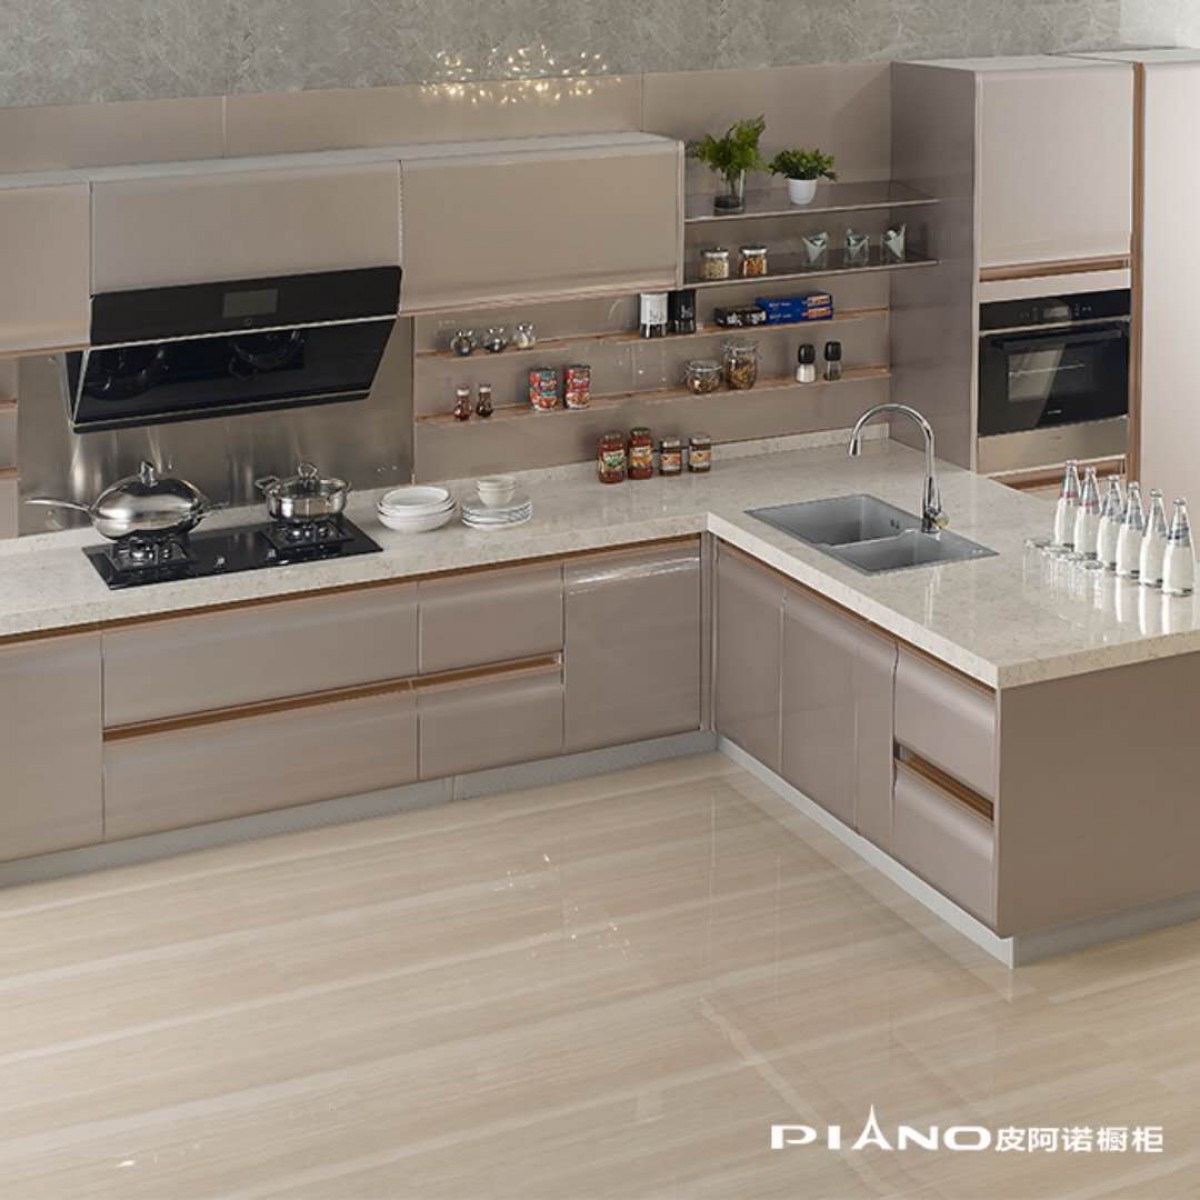 皮阿诺橱柜 天鹅漫舞 简约现代开放式厨房厨柜定制